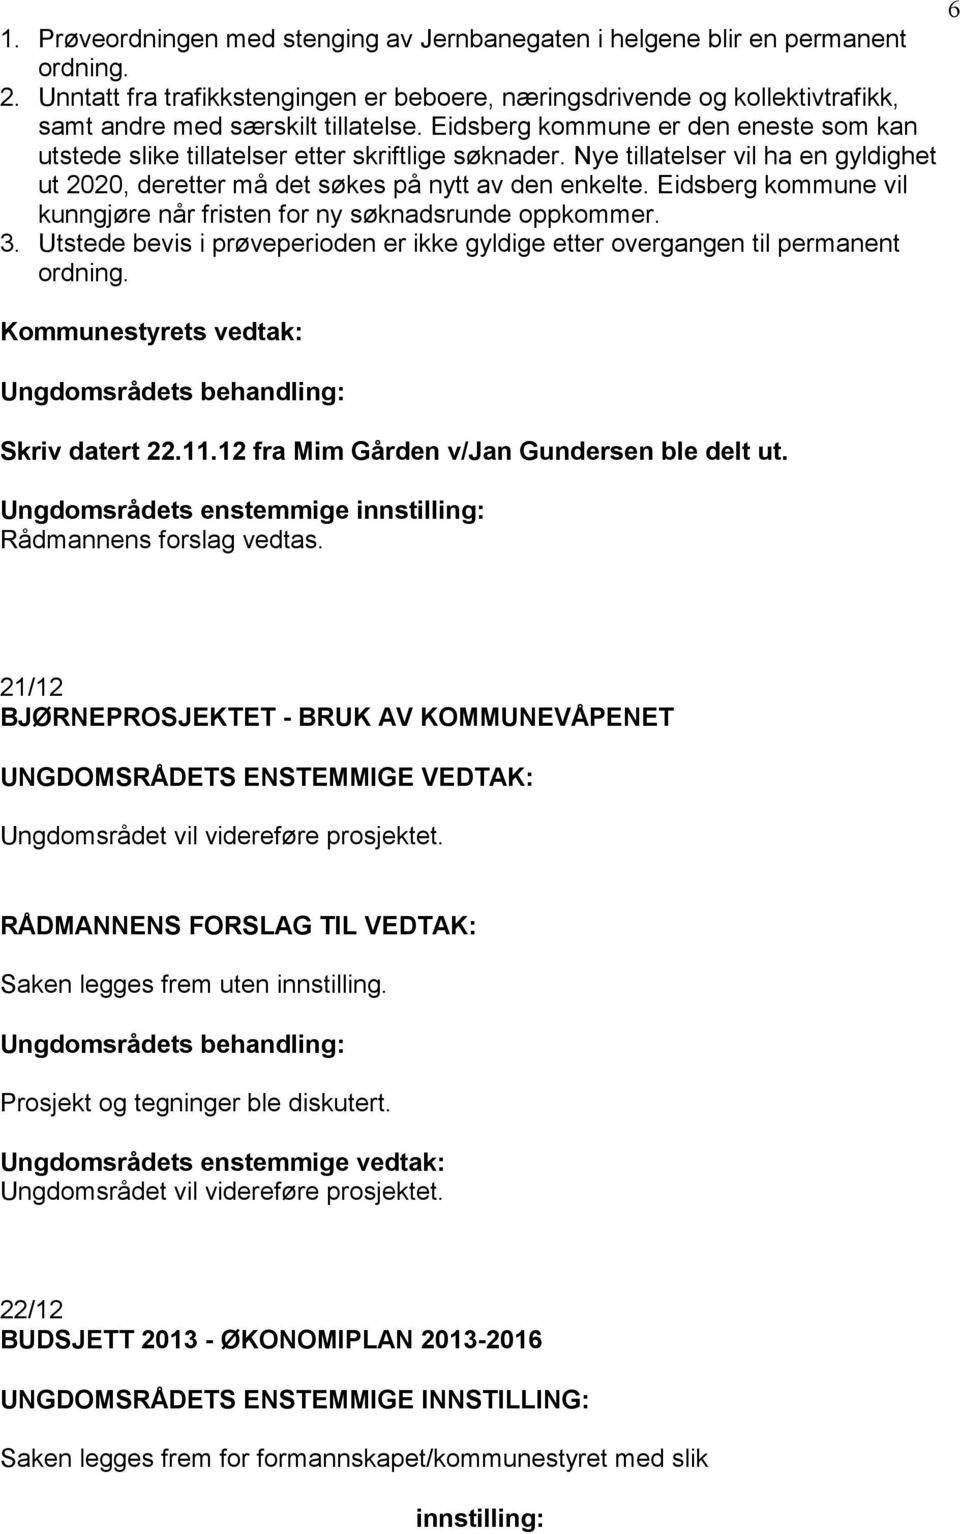 Eidsberg kommune er den eneste som kan utstede slike tillatelser etter skriftlige søknader. Nye tillatelser vil ha en gyldighet ut 2020, deretter må det søkes på nytt av den enkelte.